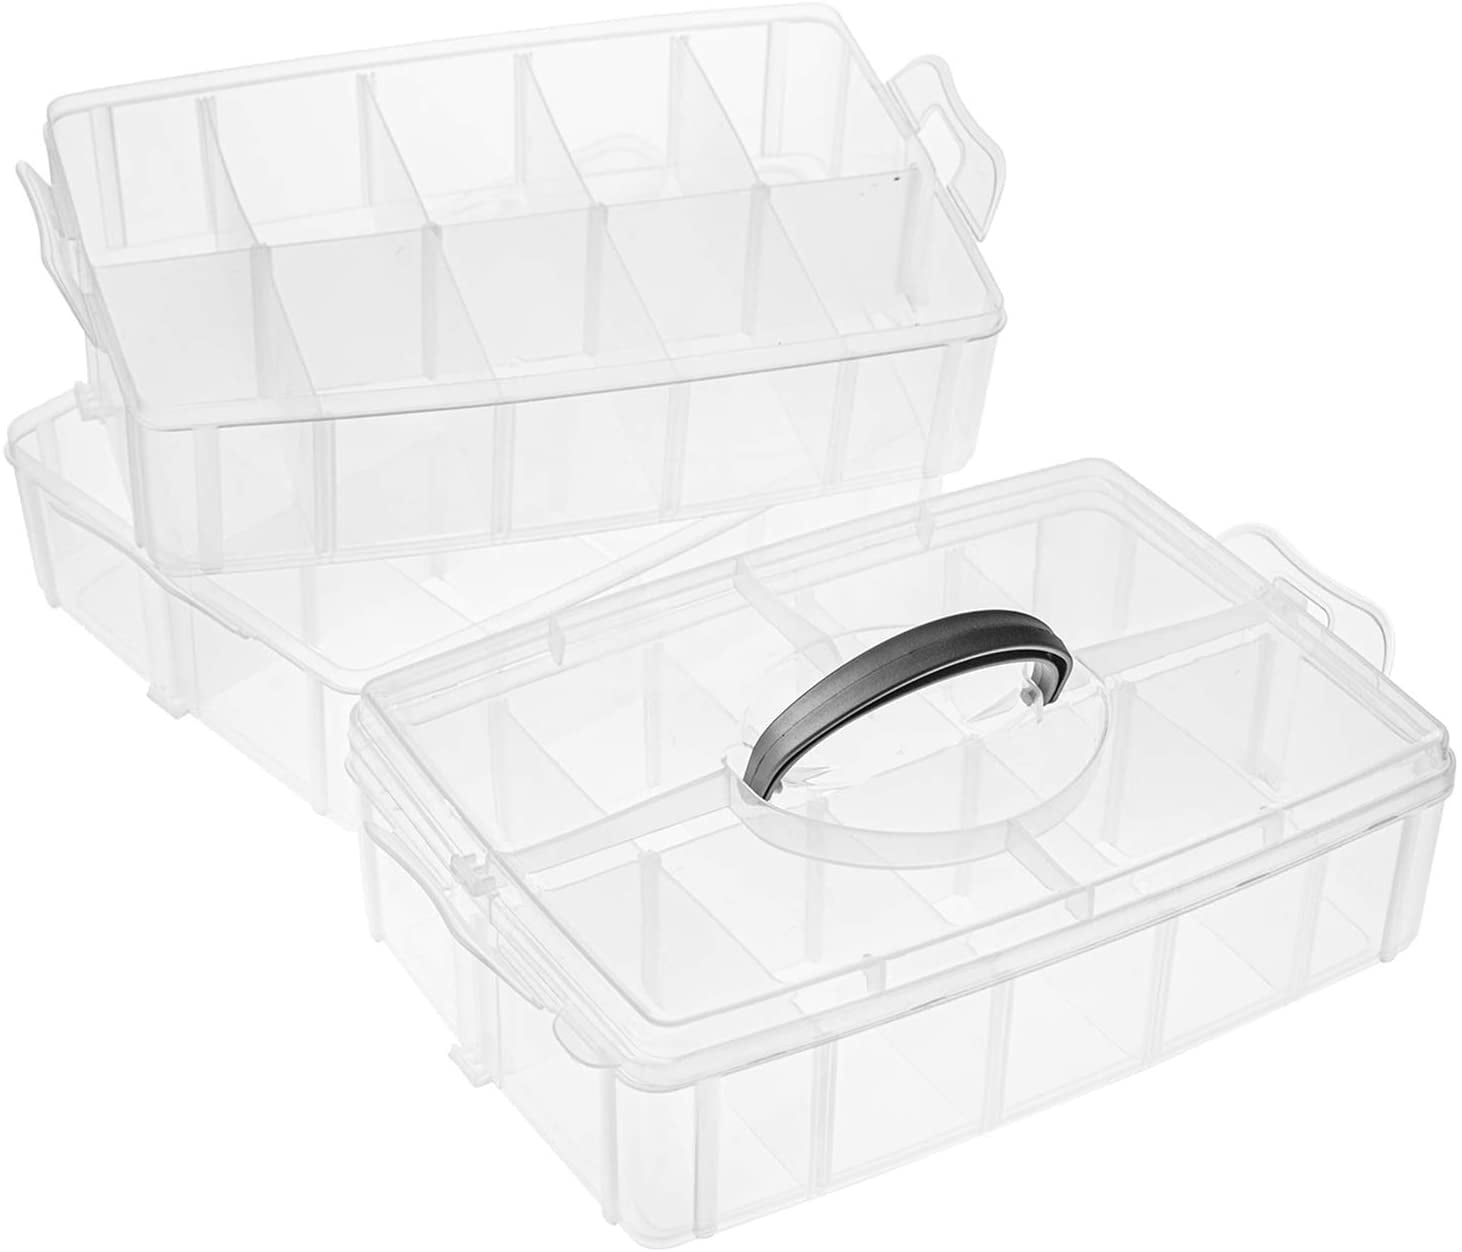 3-tier Adjustable Stackable Organiser Plastic Jewellery Craft Storage Box 